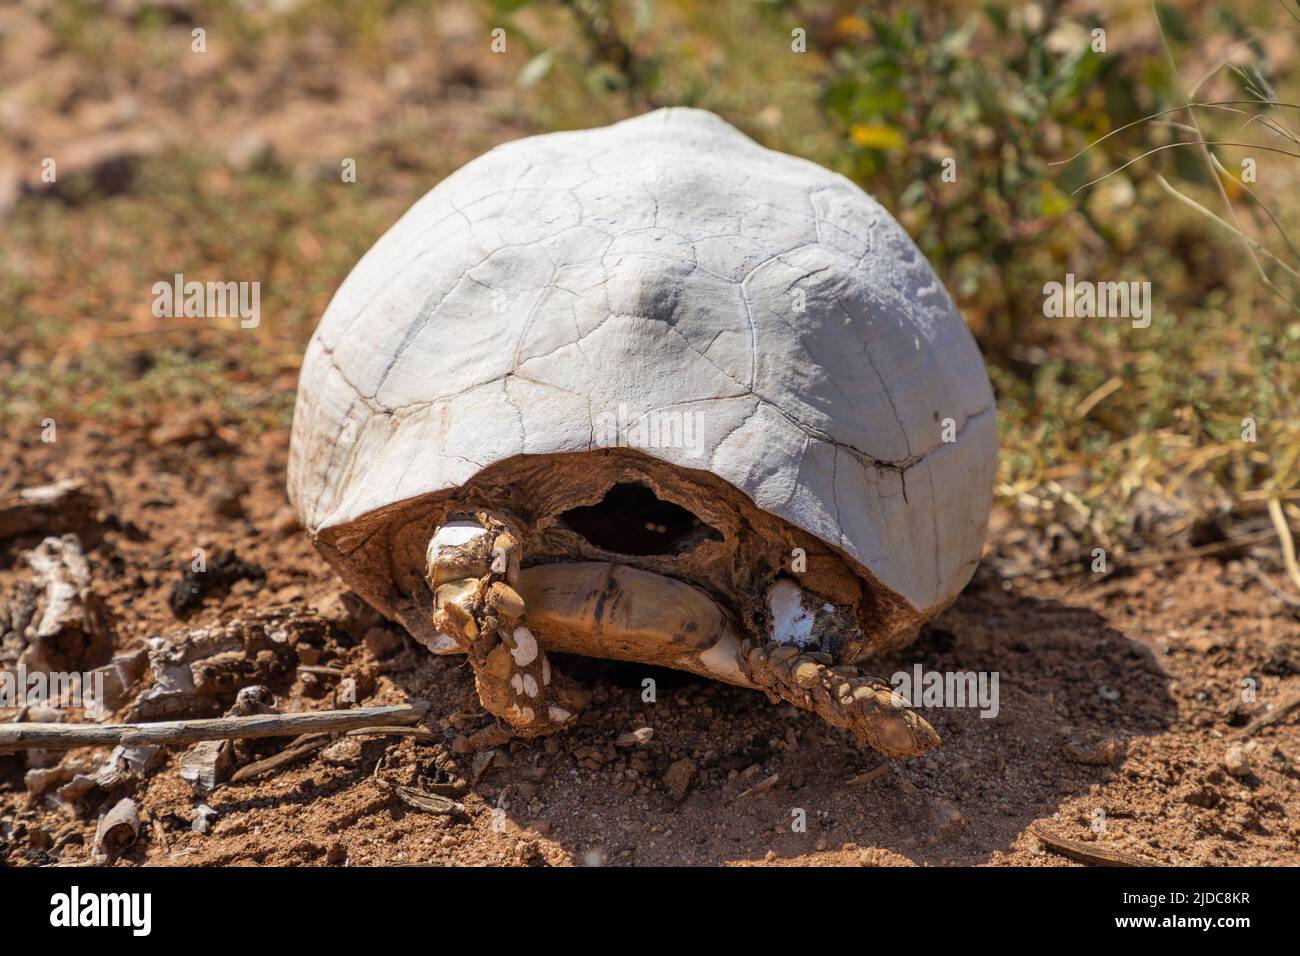 Selektiver Fokus auf die Schale und Beine einer toten Schildkröte in einer Wüste. Die Schale ist verfärbt und weiß. Stockfoto